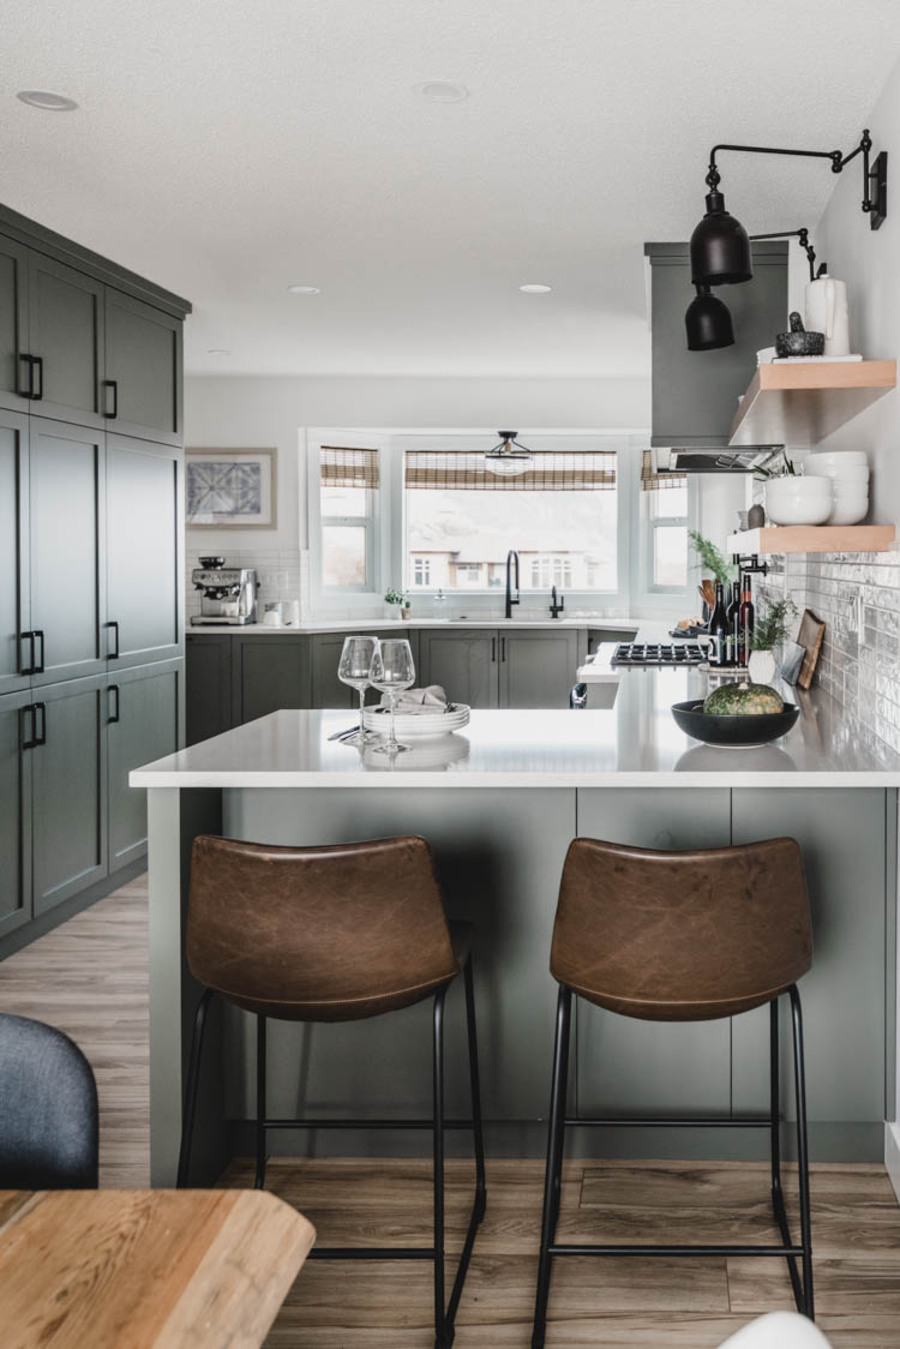 Cocina de concepto abierto con muebles de color verde grisáceo y encimera blanca. Los muros y azulejos son blancos y el piso, de madera.